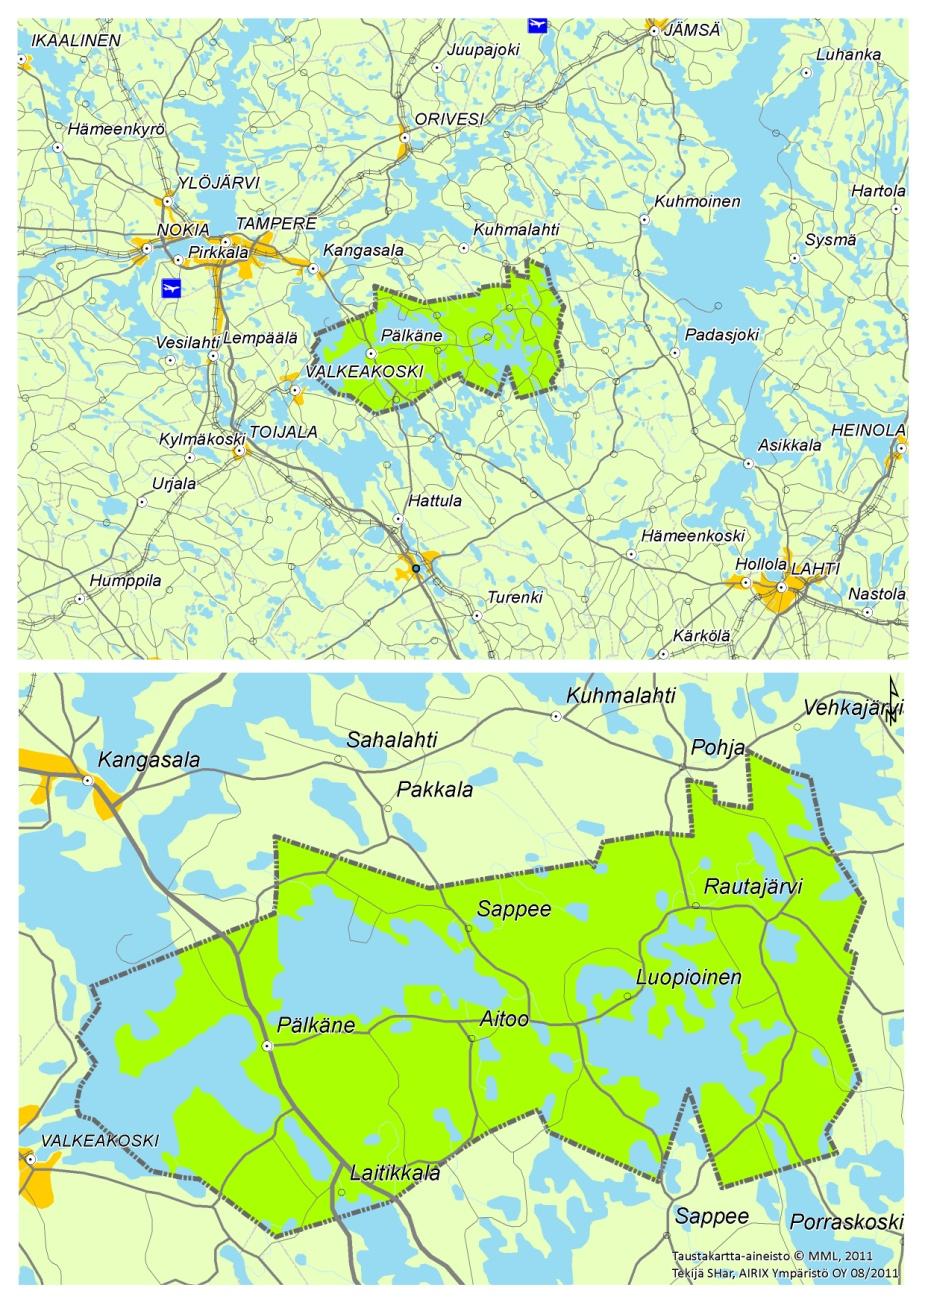 mukaisiin kehittämistavoitteisiin ja valtakunnallisiin alueidenkäyttötavoitteisiin. Nykyinen Pälkäneen kunta syntyi Pälkäneen ja Luopioisten kuntien yhdistyttyä vuonna 2007.